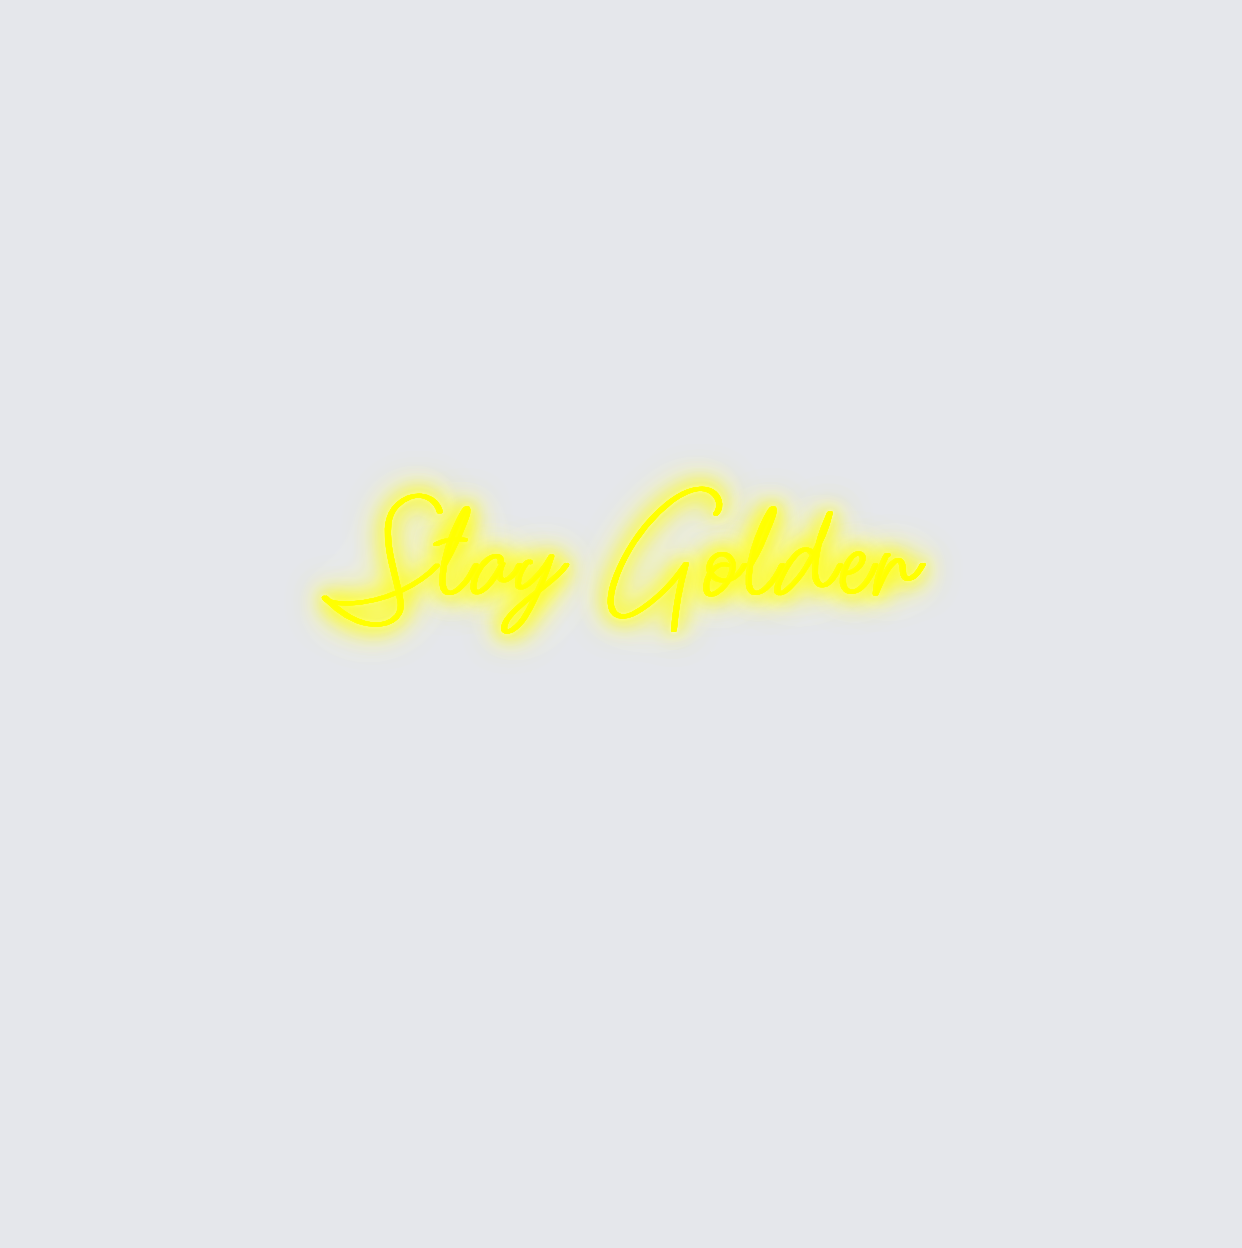 Custom neon sign - Stay Golden